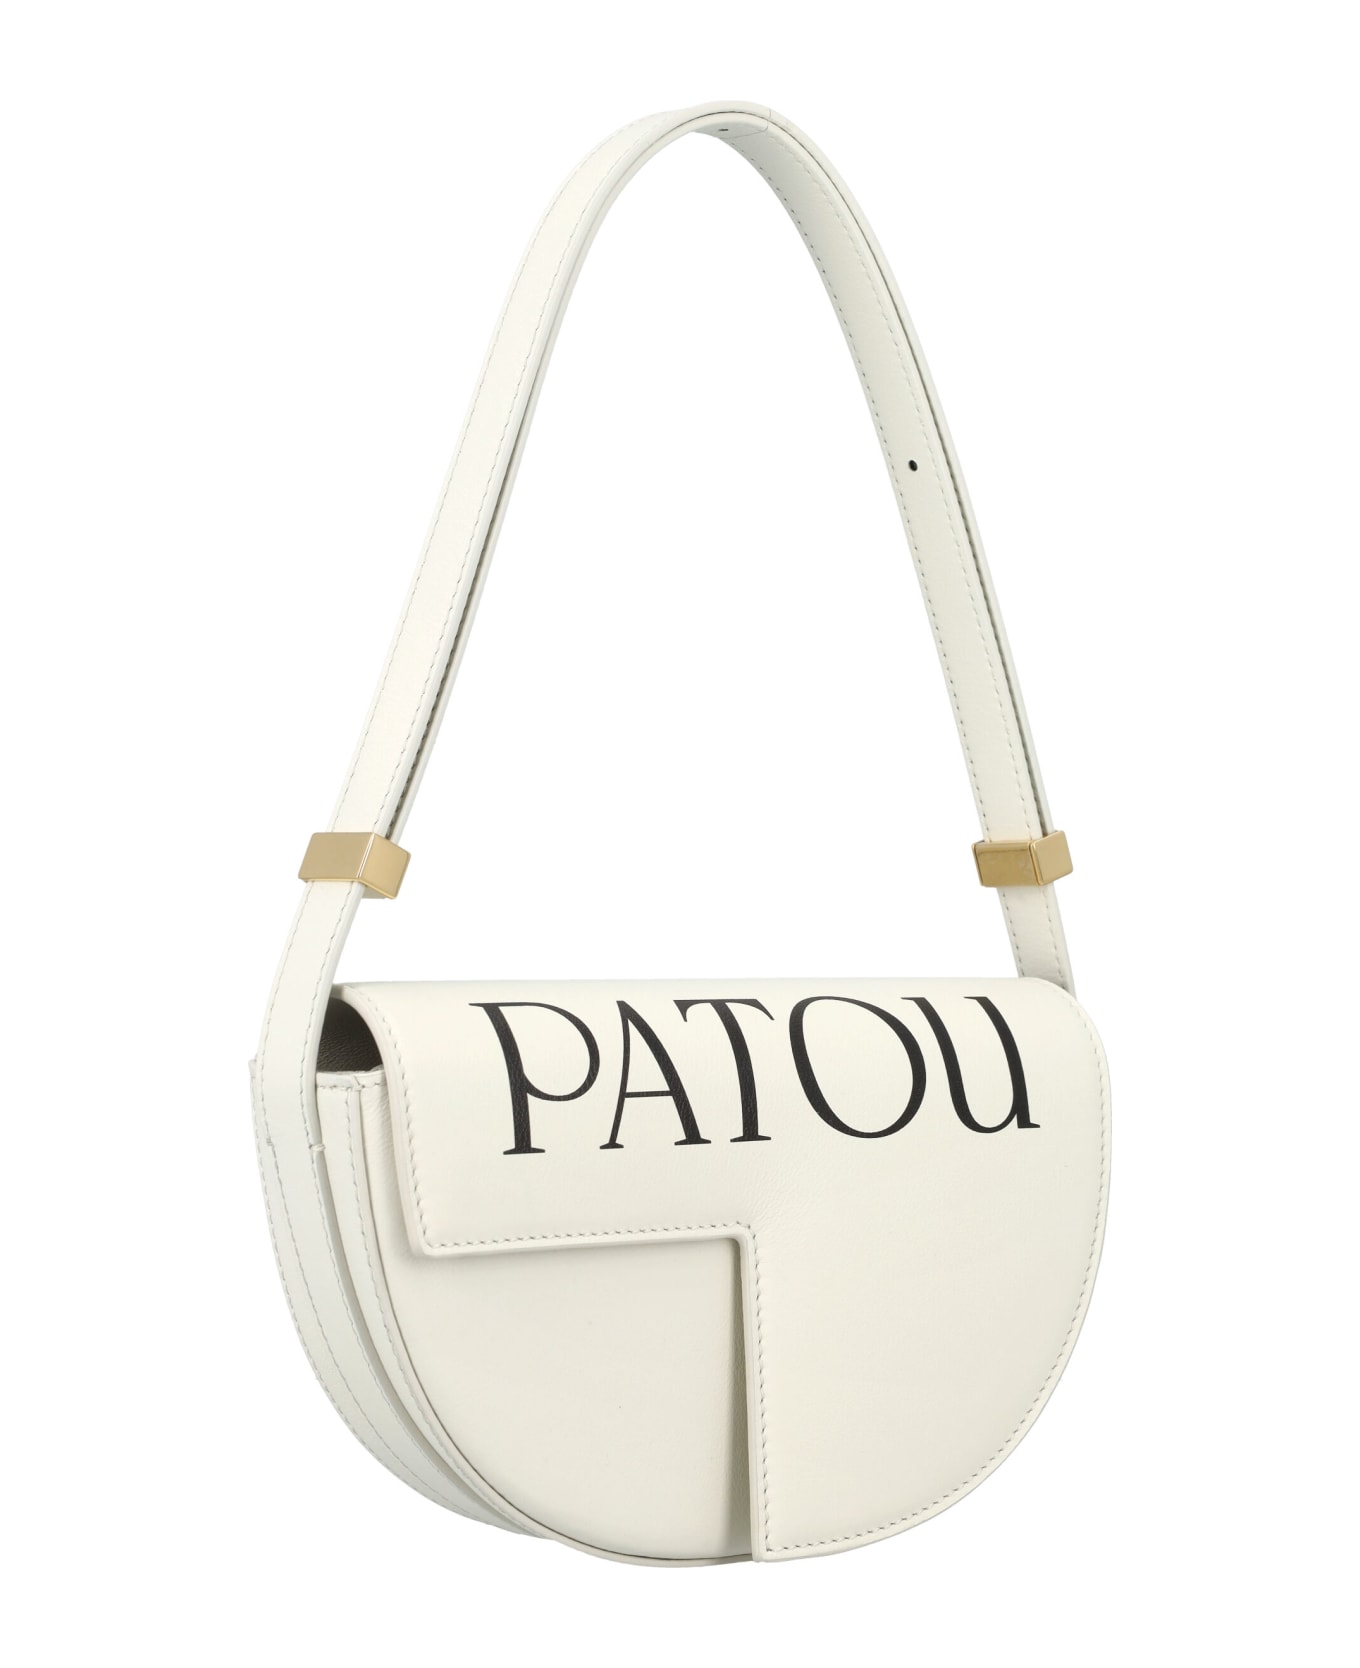 Patou Le Petit Patou Logo Bag - WHITE BLACK ショルダーバッグ